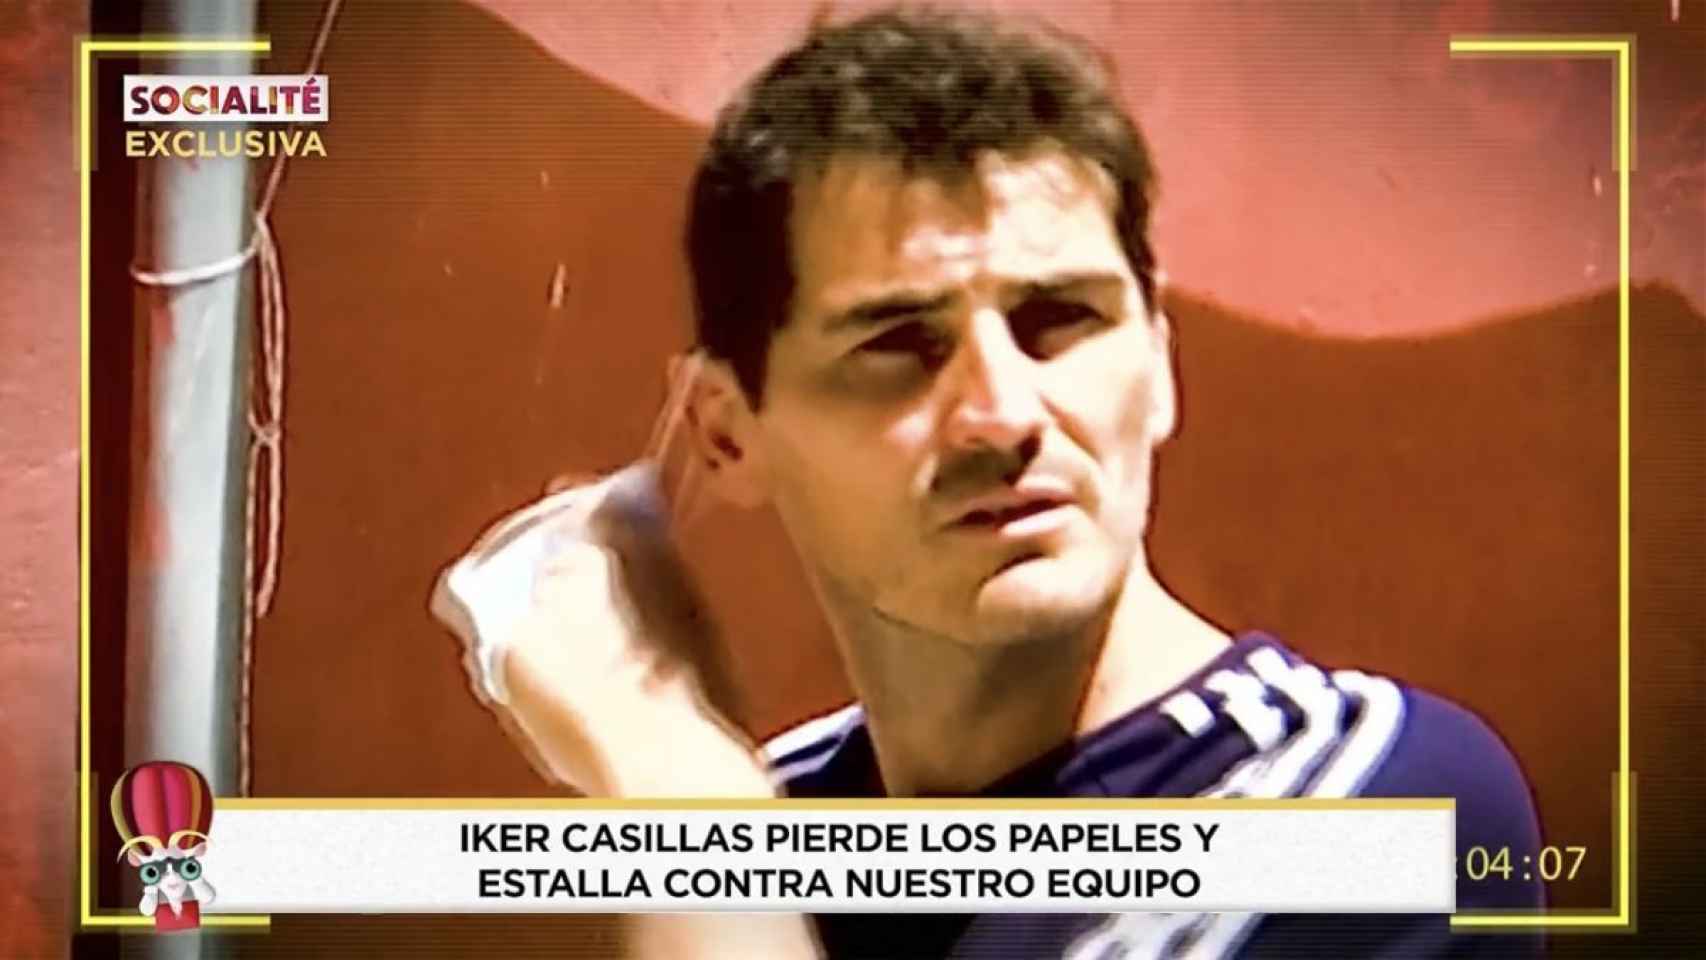 Iker Casillas pierde los papeles con un equipo de 'Socialité'